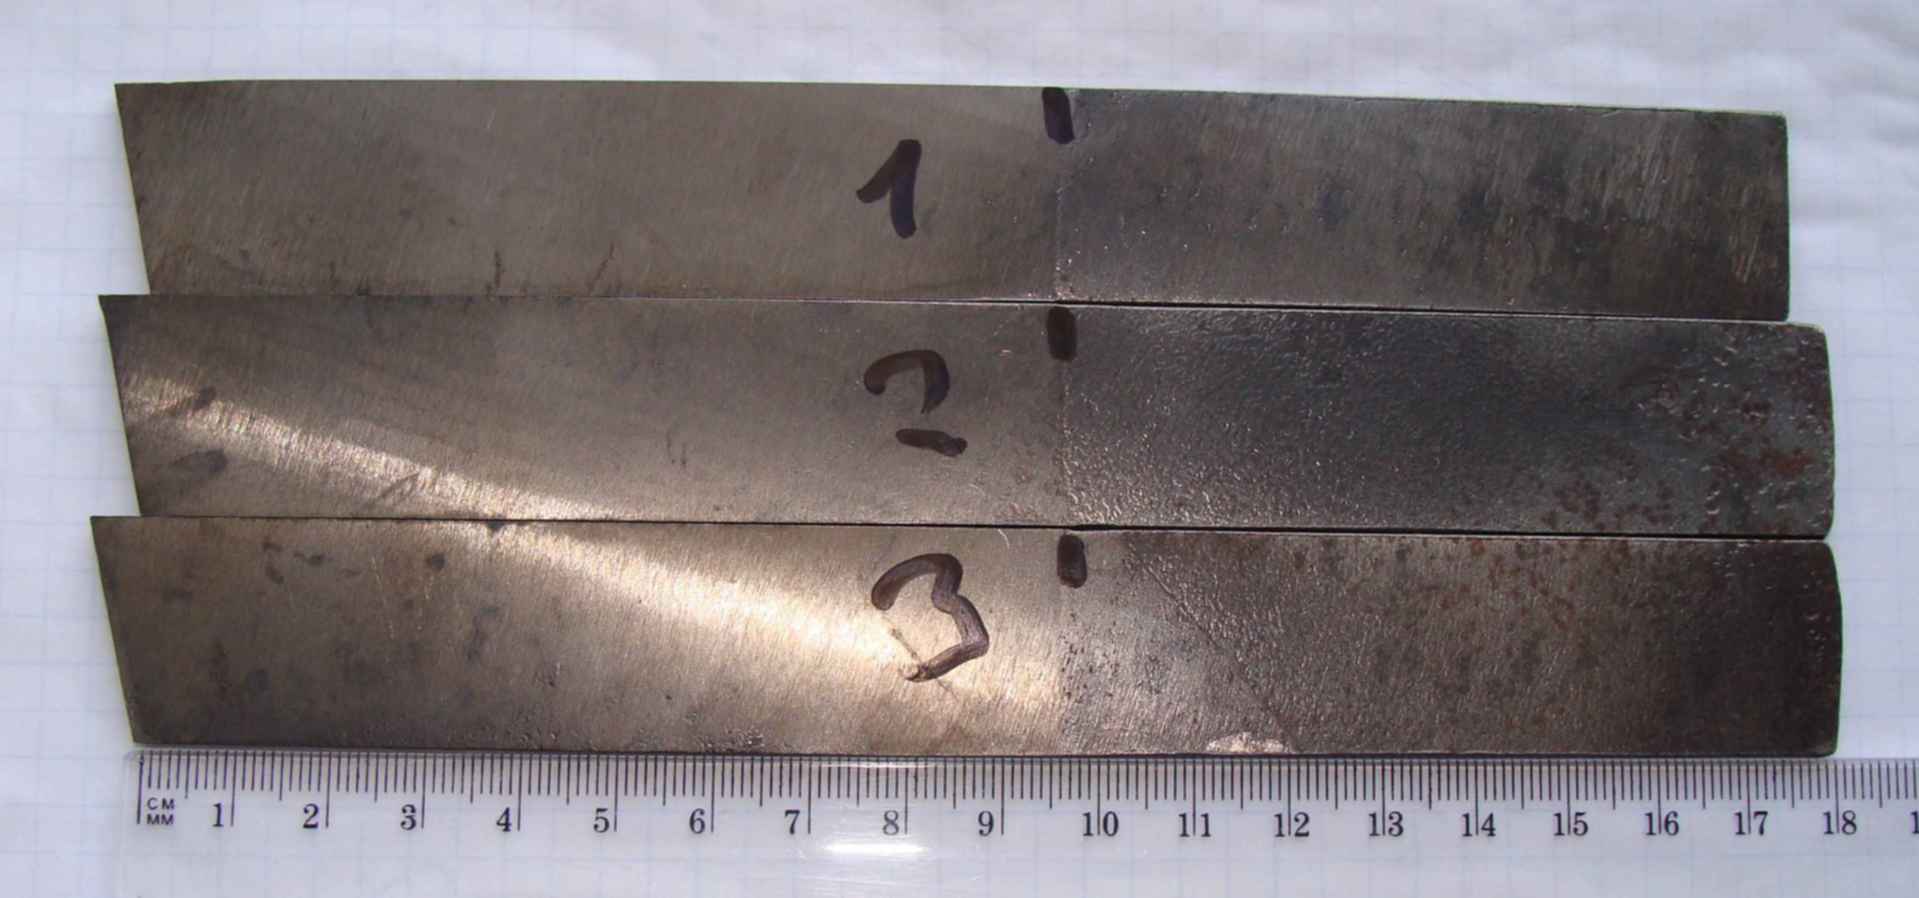 Быстрорежущая сталь Р18, применяемая для изготовления металлорежущего инструмента Расшифровка марки, ее характеристики и применение